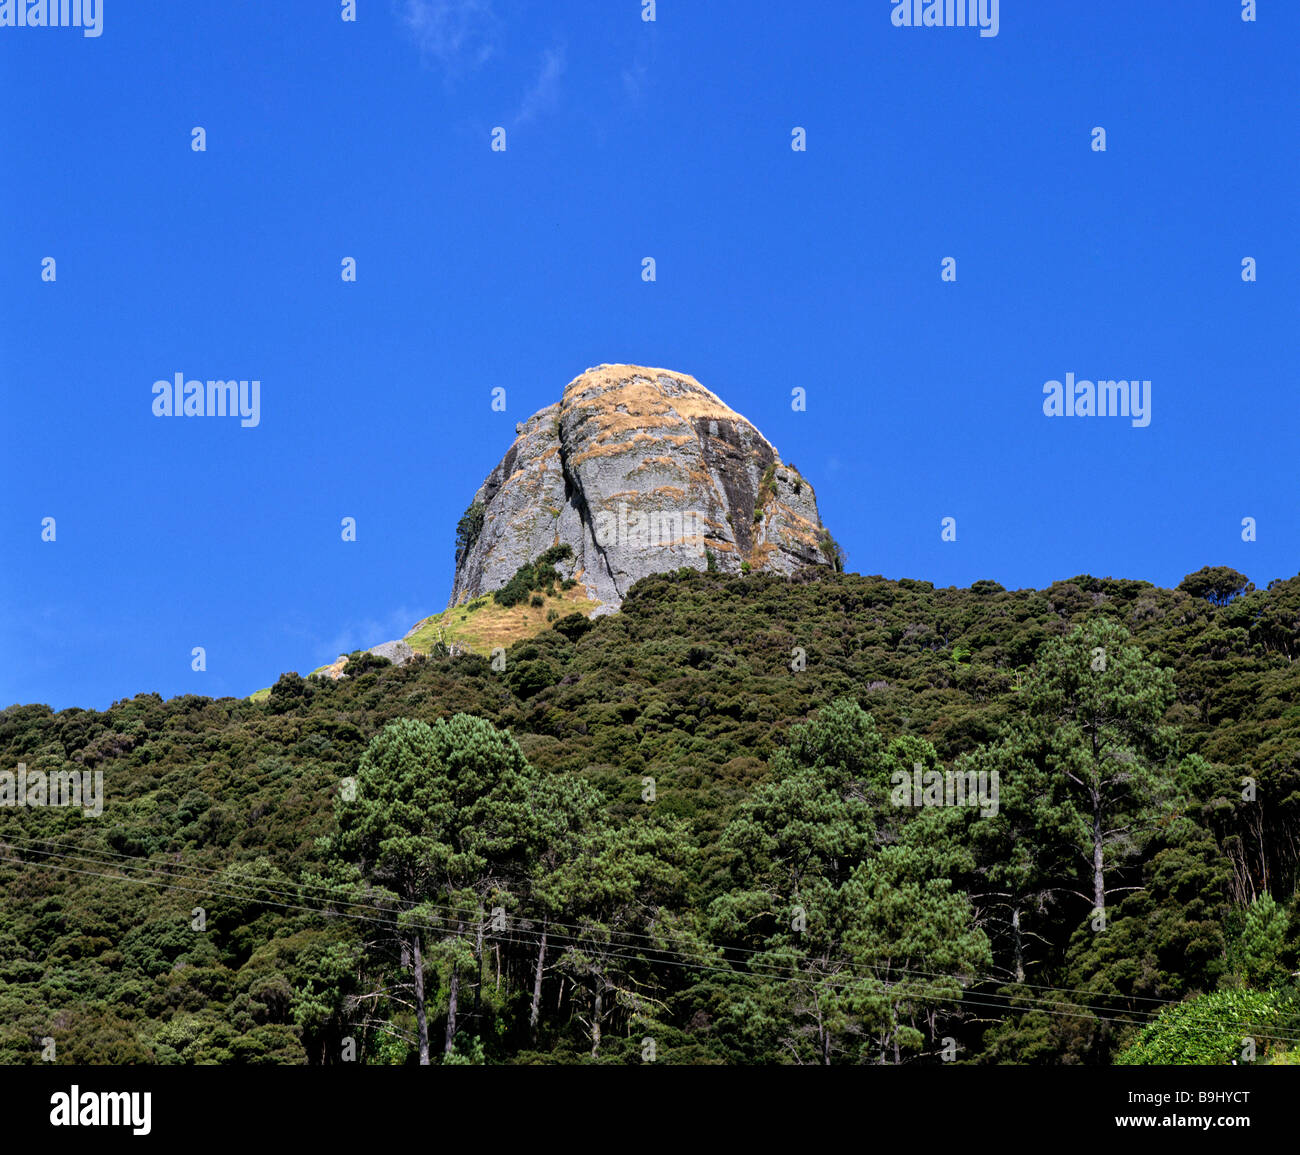 Duke's naso, roccia sopra paesaggio subtropicale, Whangaroa, Isola del nord, Nuova Zelanda Foto Stock